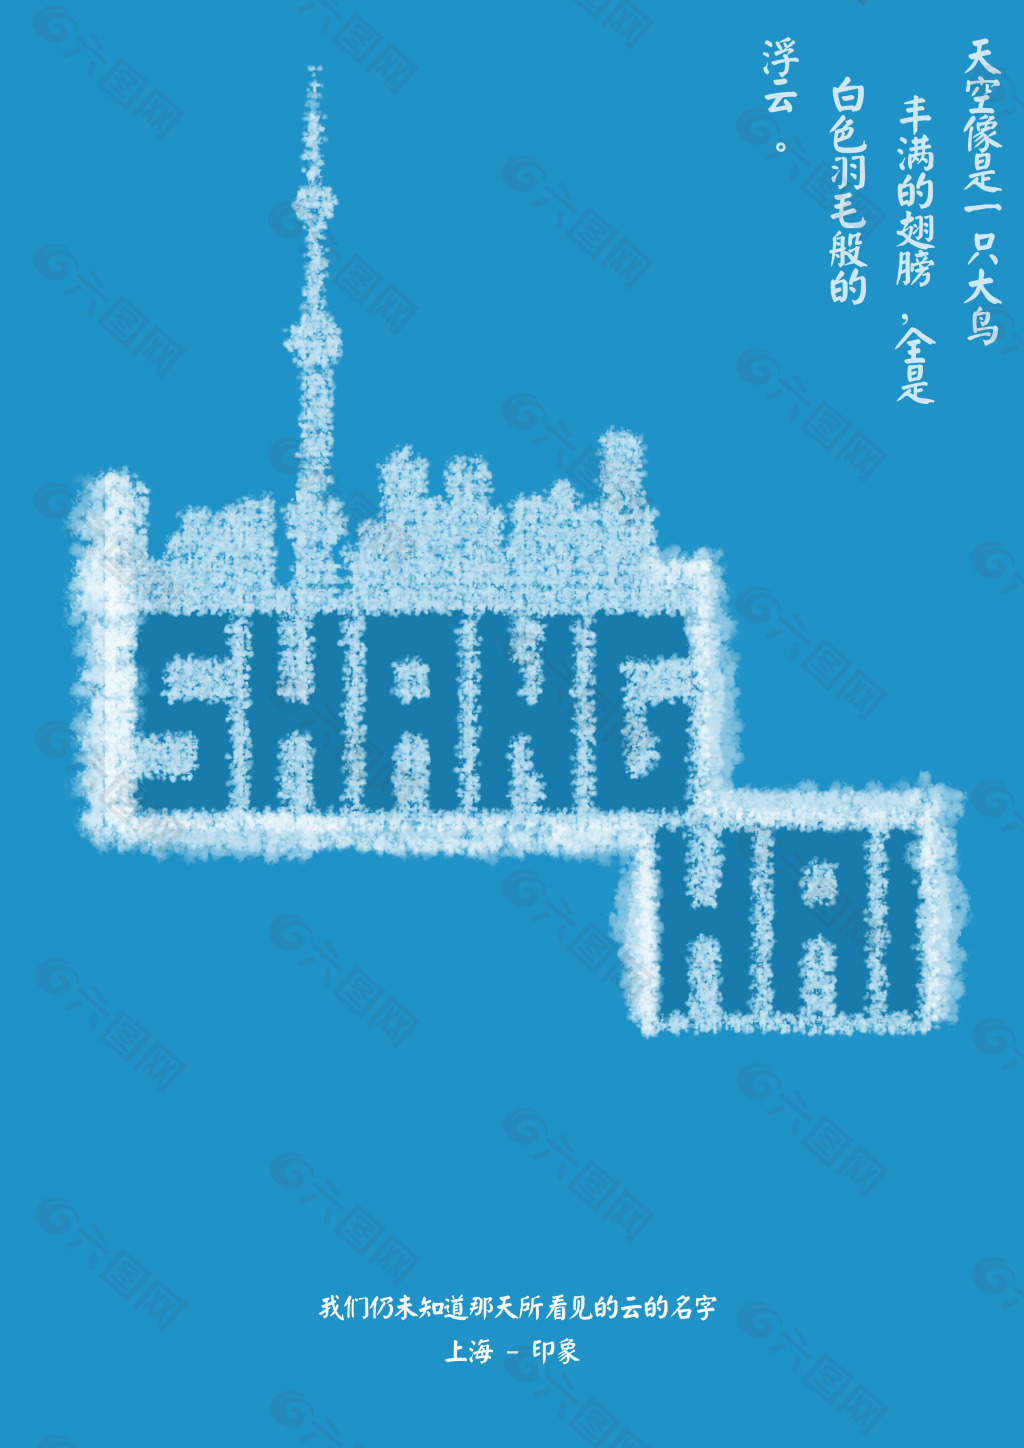 上海印象城市海报